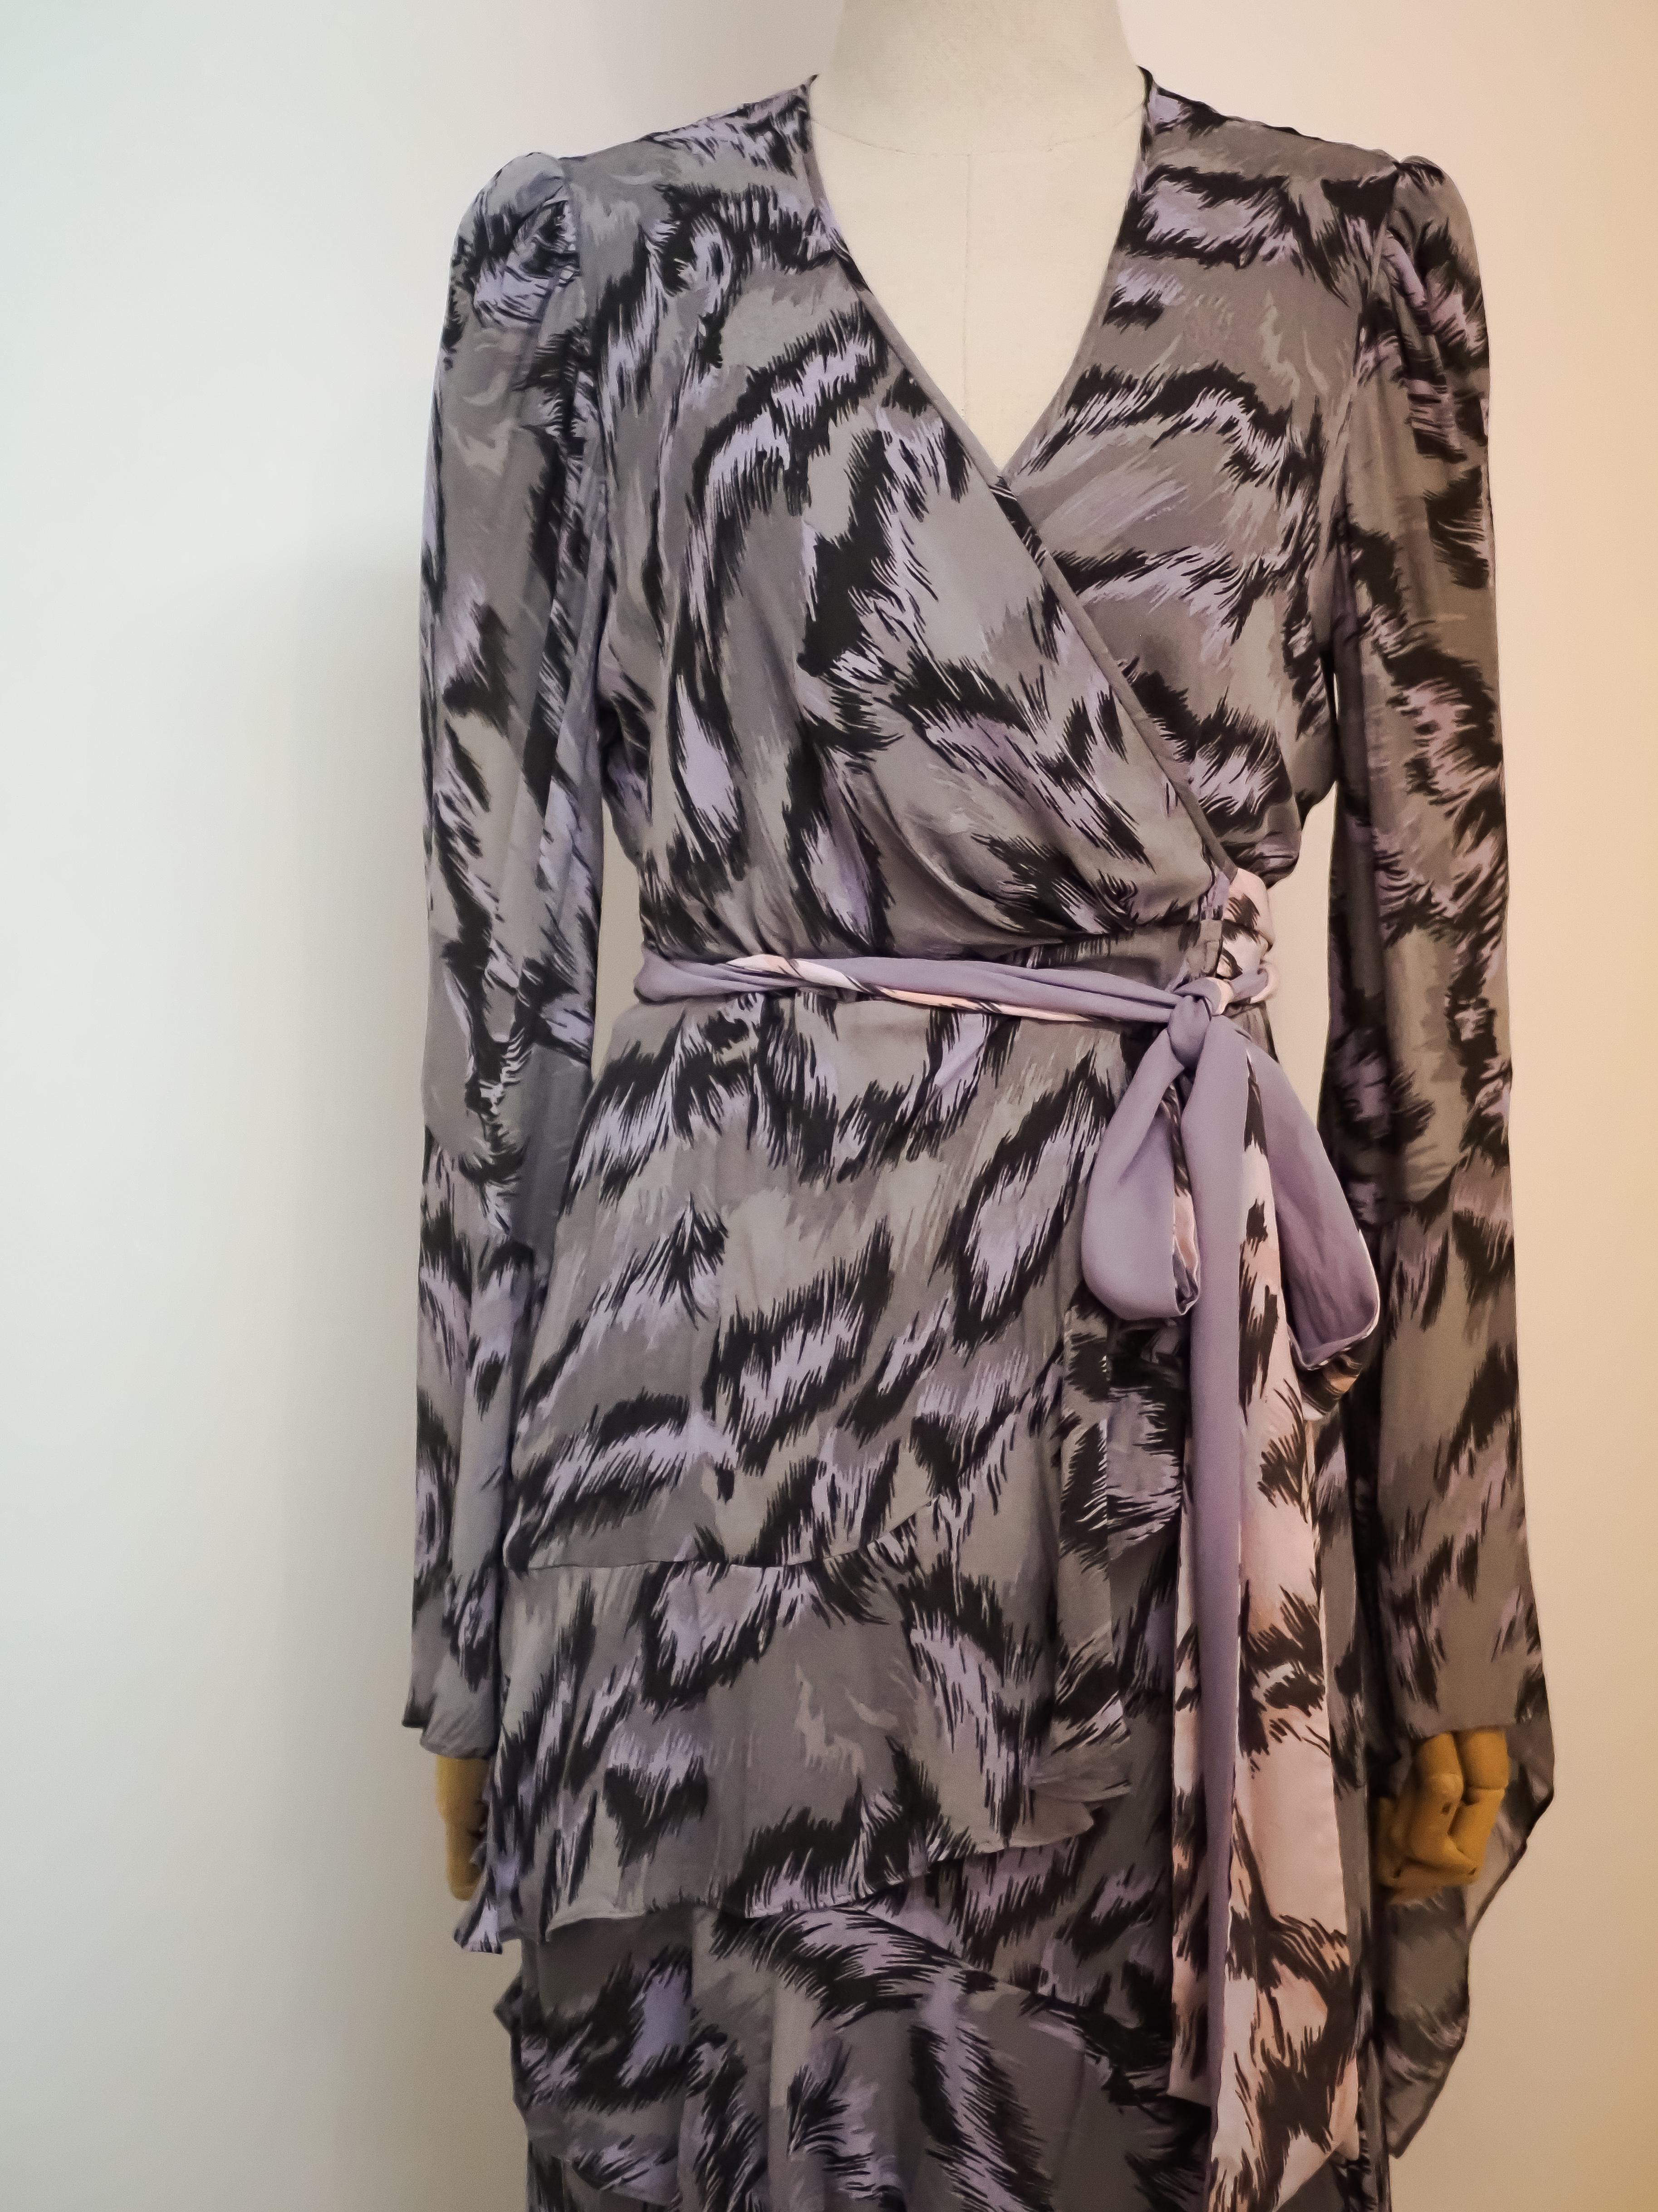 Diane Von Furstenberg dress NWOT
size 8